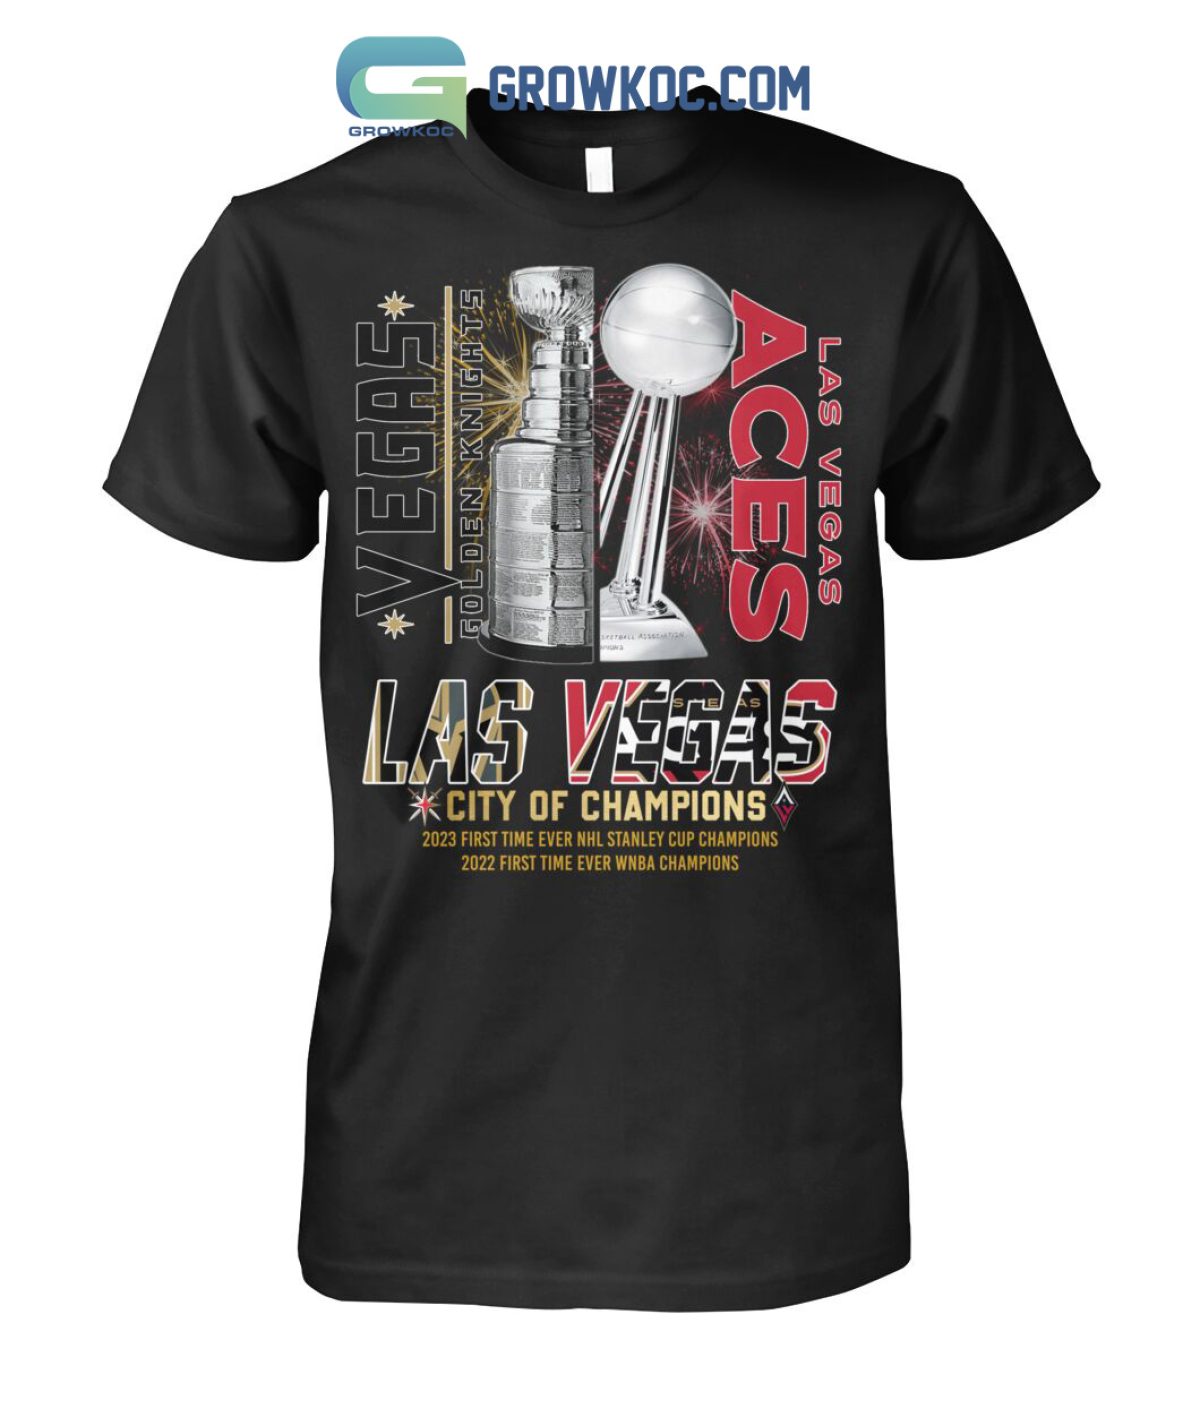 Las Vegas Aces Champs Gear, Aces Jerseys, Hats, Merchandise